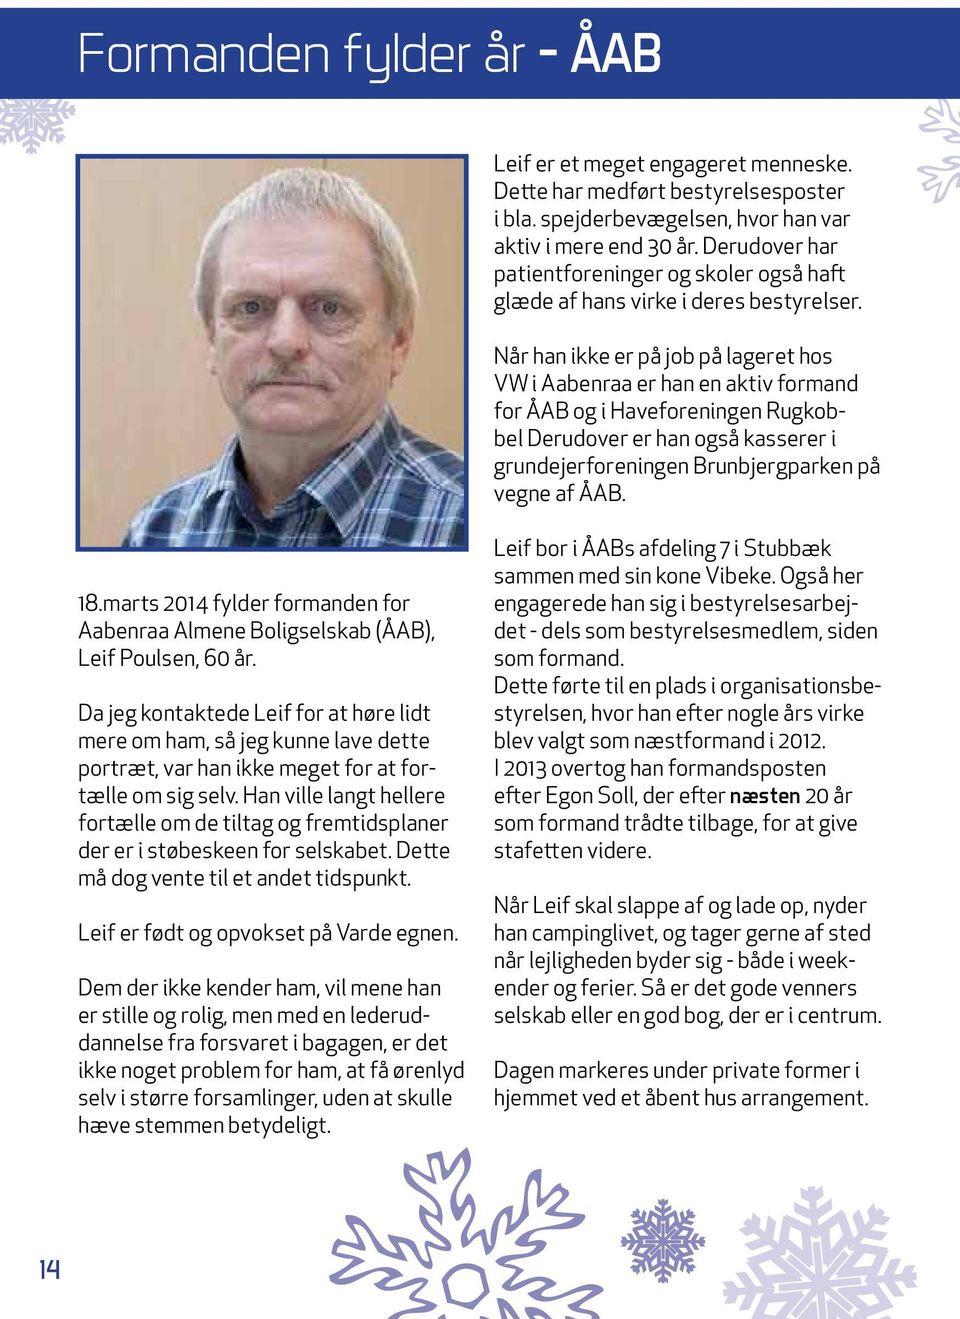 Når han ikke er på job på lageret hos VW i Aabenraa er han en aktiv formand for ÅAB og i Haveforeningen Rugkobbel Derudover er han også kasserer i grundejerforeningen Brunbjergparken på vegne af ÅAB.